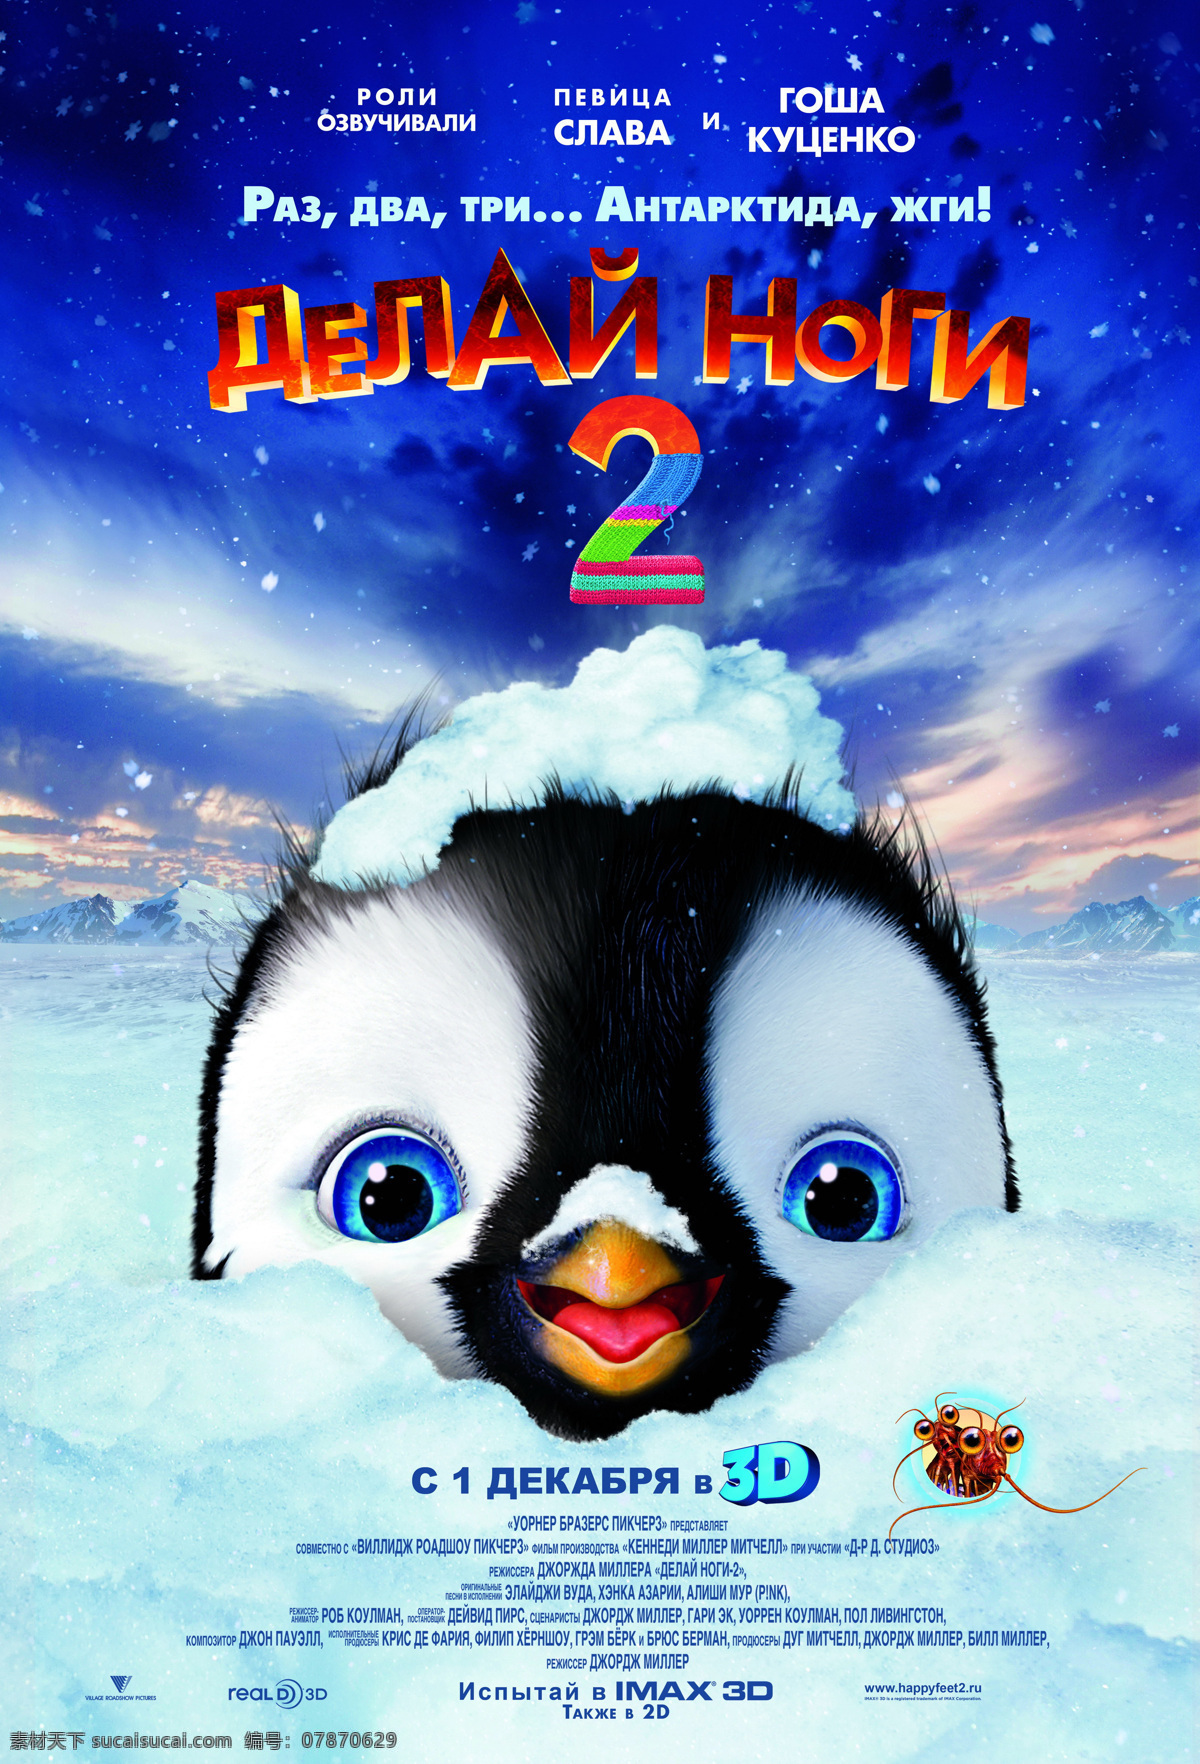 快乐的大脚2 电影海报 快乐的大脚 电影宣传海报 电影封面 3d电影 文化艺术 影视娱乐 最新电影海报 南极 冰川 雪地 企鹅 卡通动画 快乐的企鹅